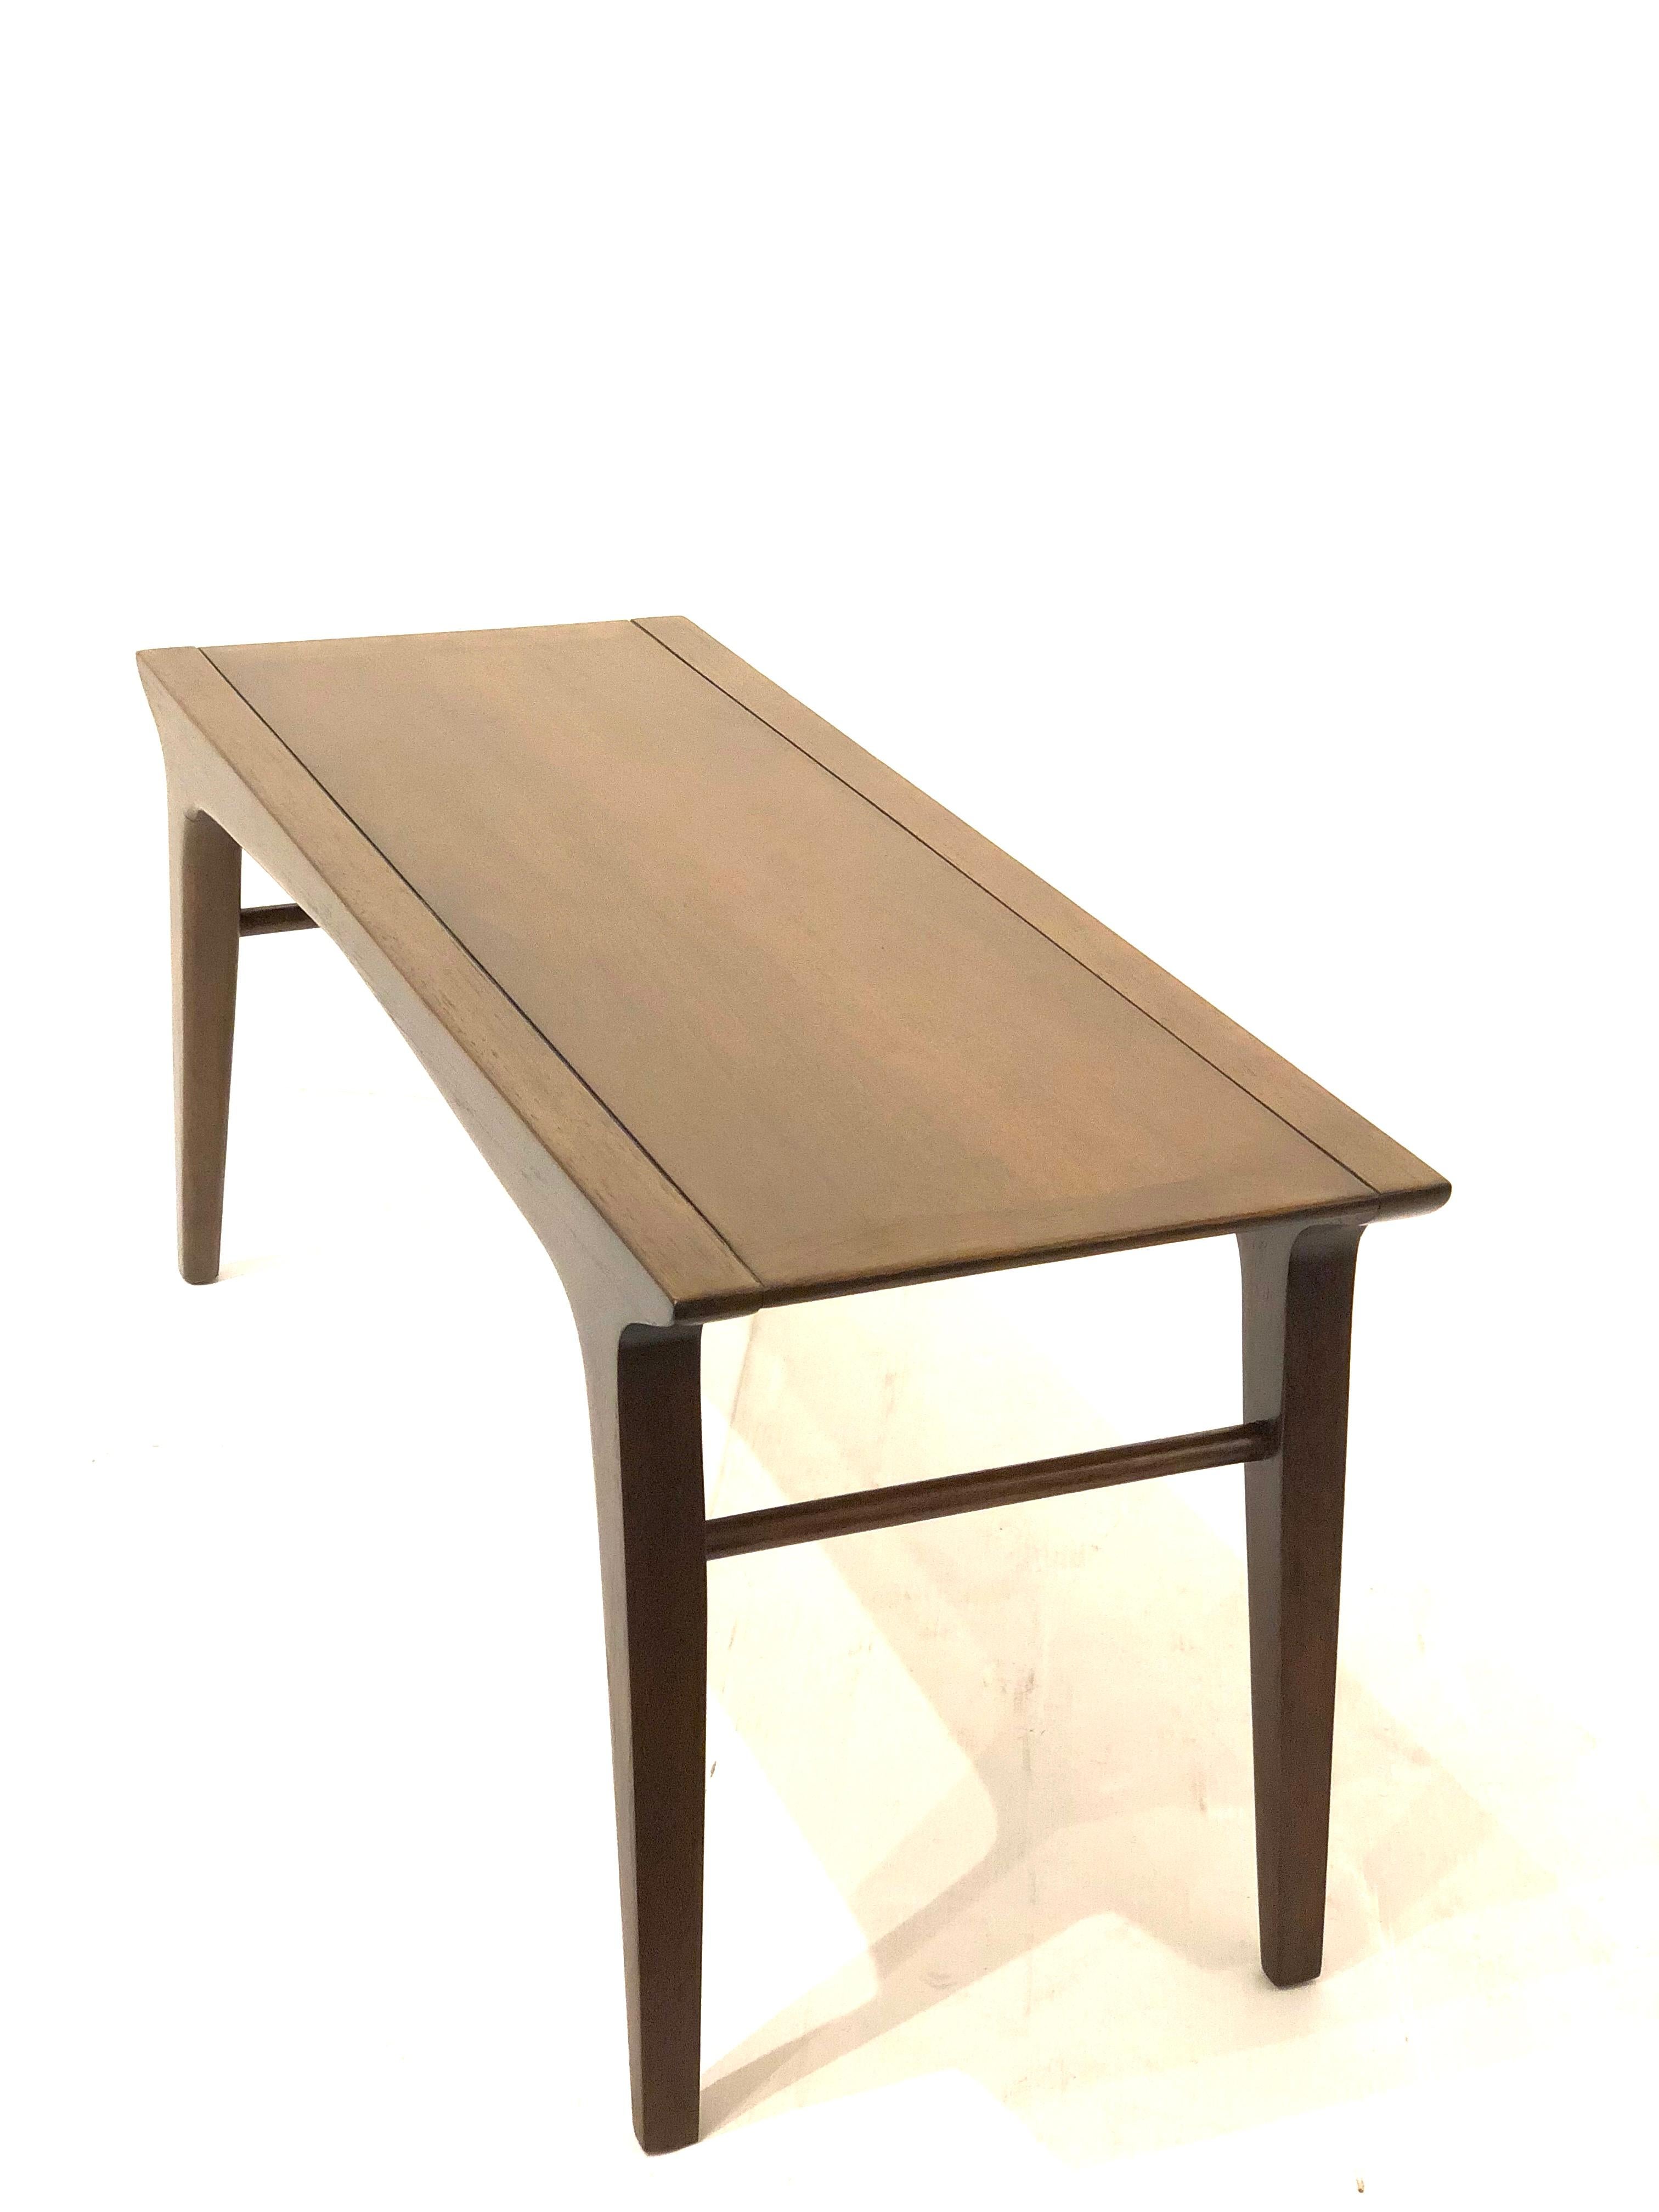 American Midcentury Bench or Table by John Van Koert for Drexel